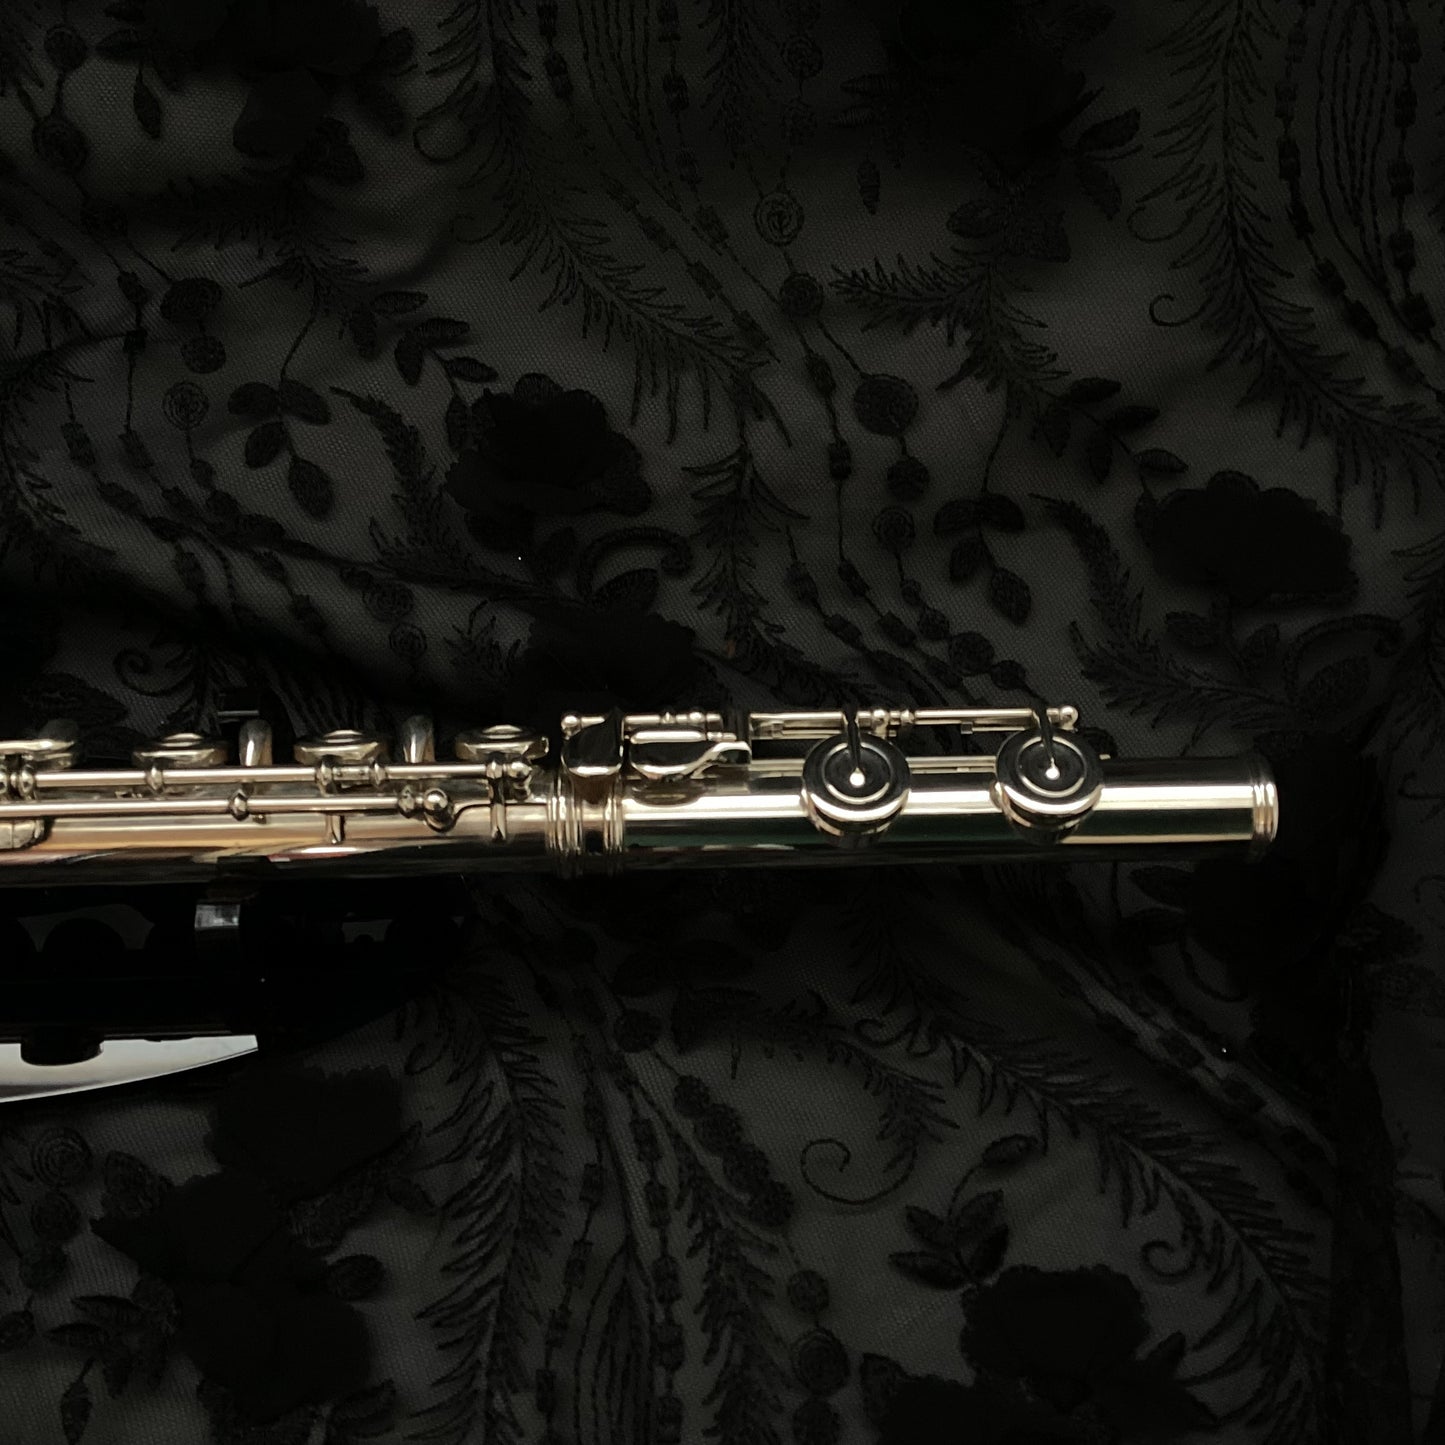 Haynes #41836 Pre-Owned Flute